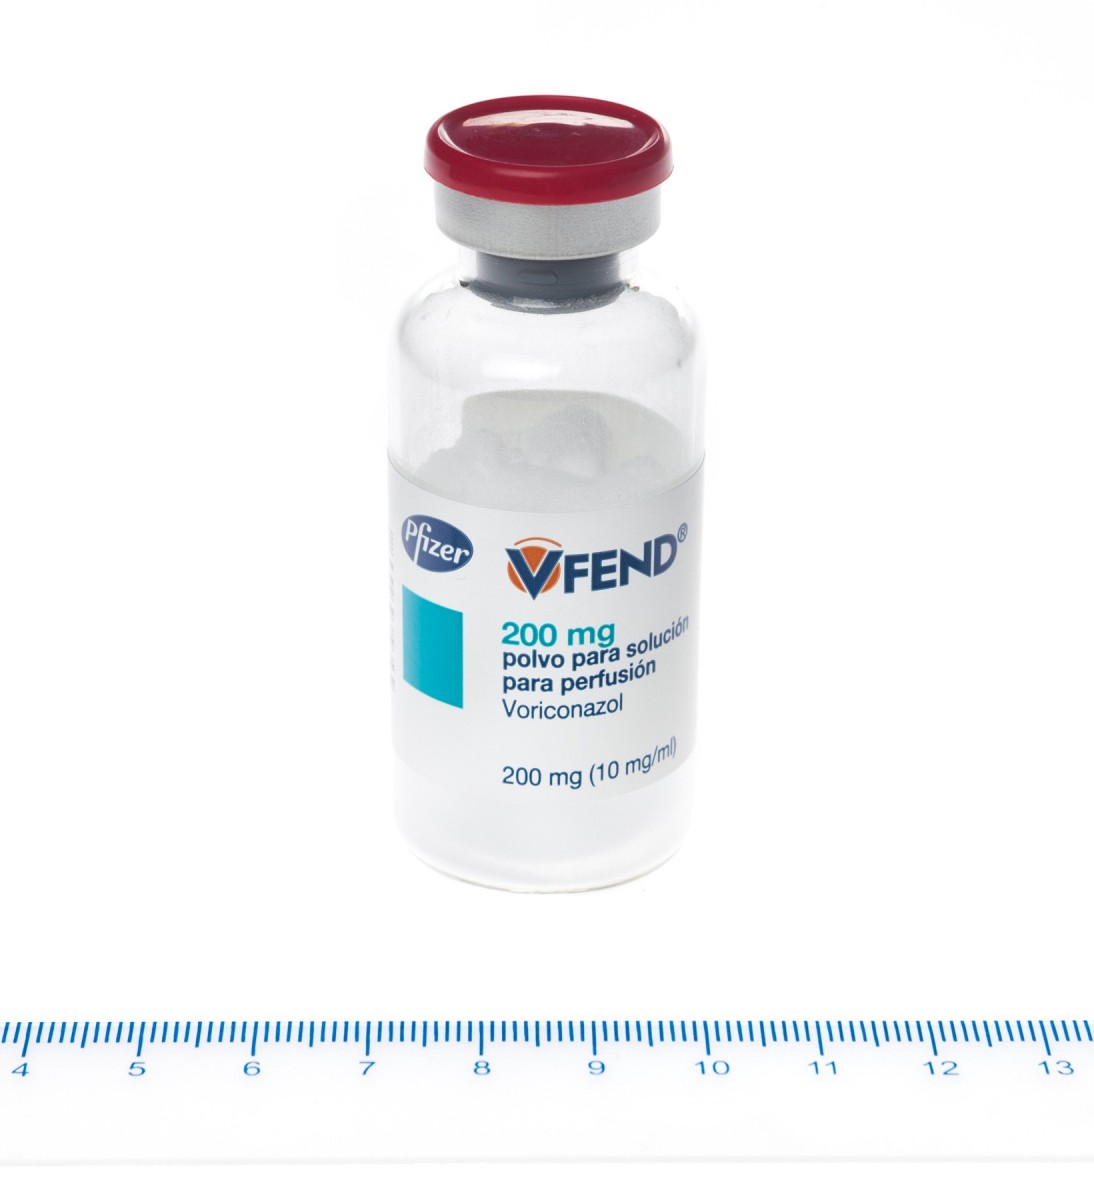 VFEND 200 mg POLVO PARA SOLUCION PARA PERFUSION, 1 vial fotografía de la forma farmacéutica.